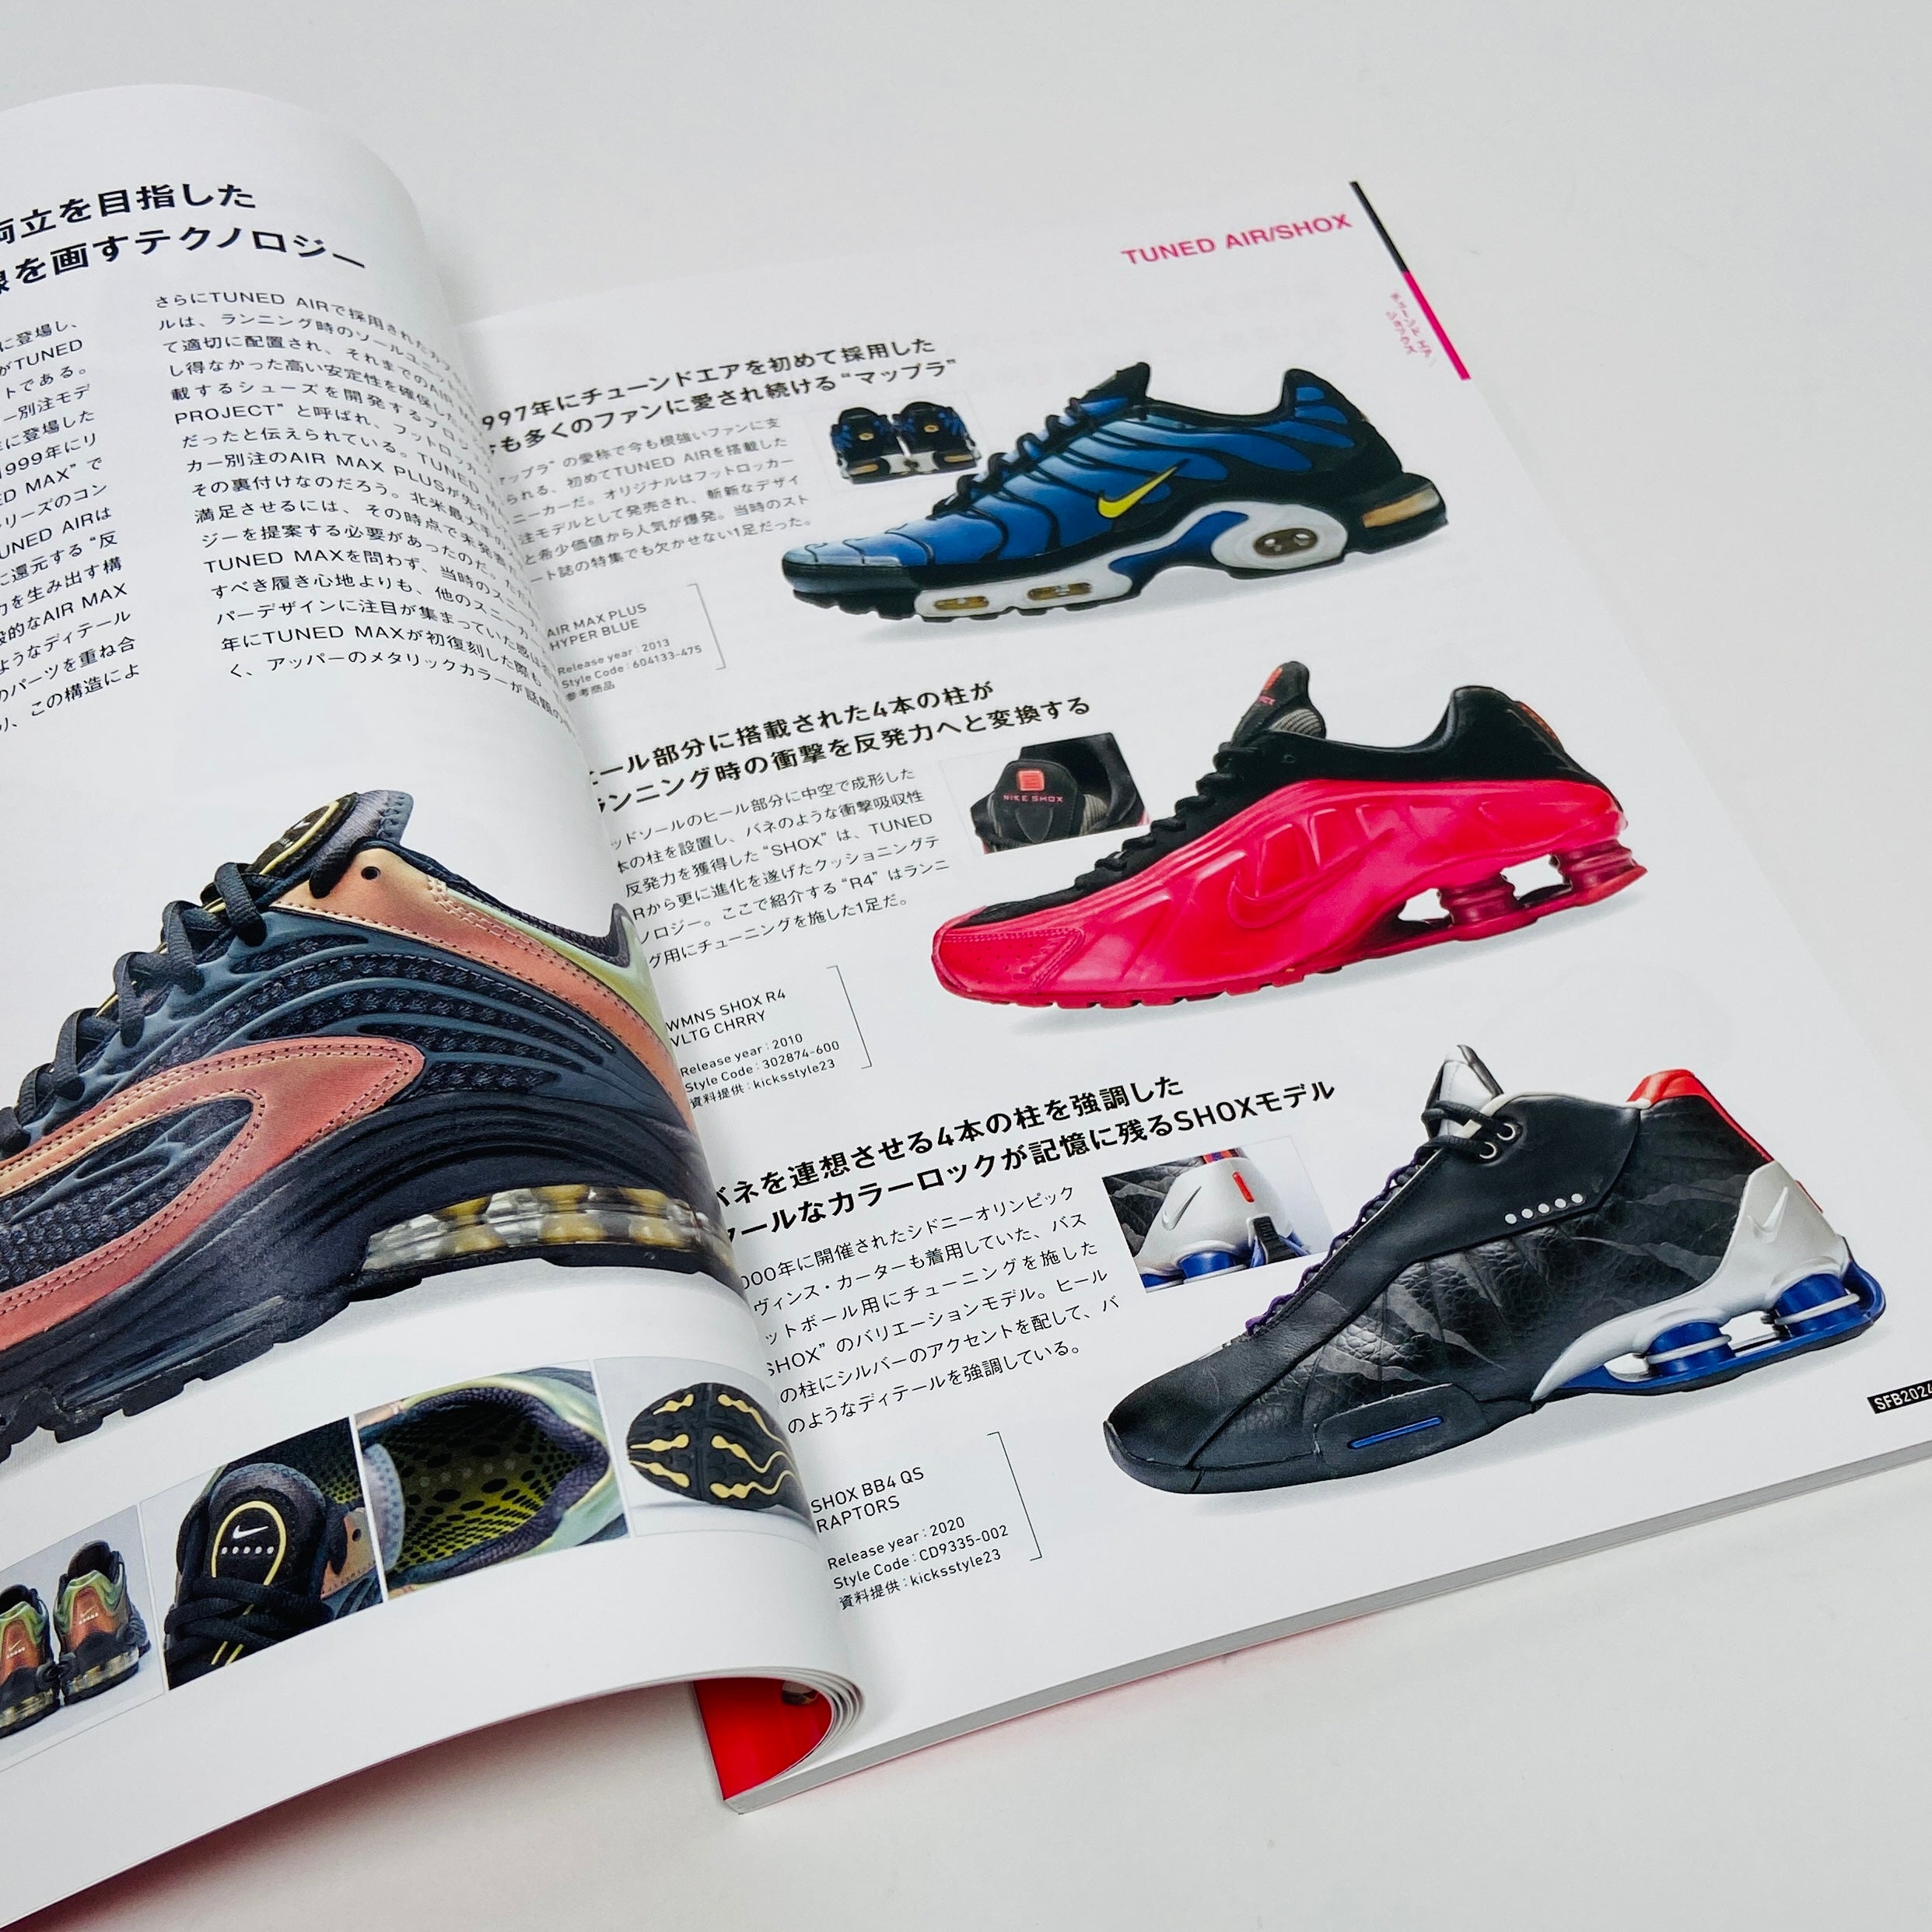 Sneaker Fan Book SFB - Nike Epic Technology – UNITOM